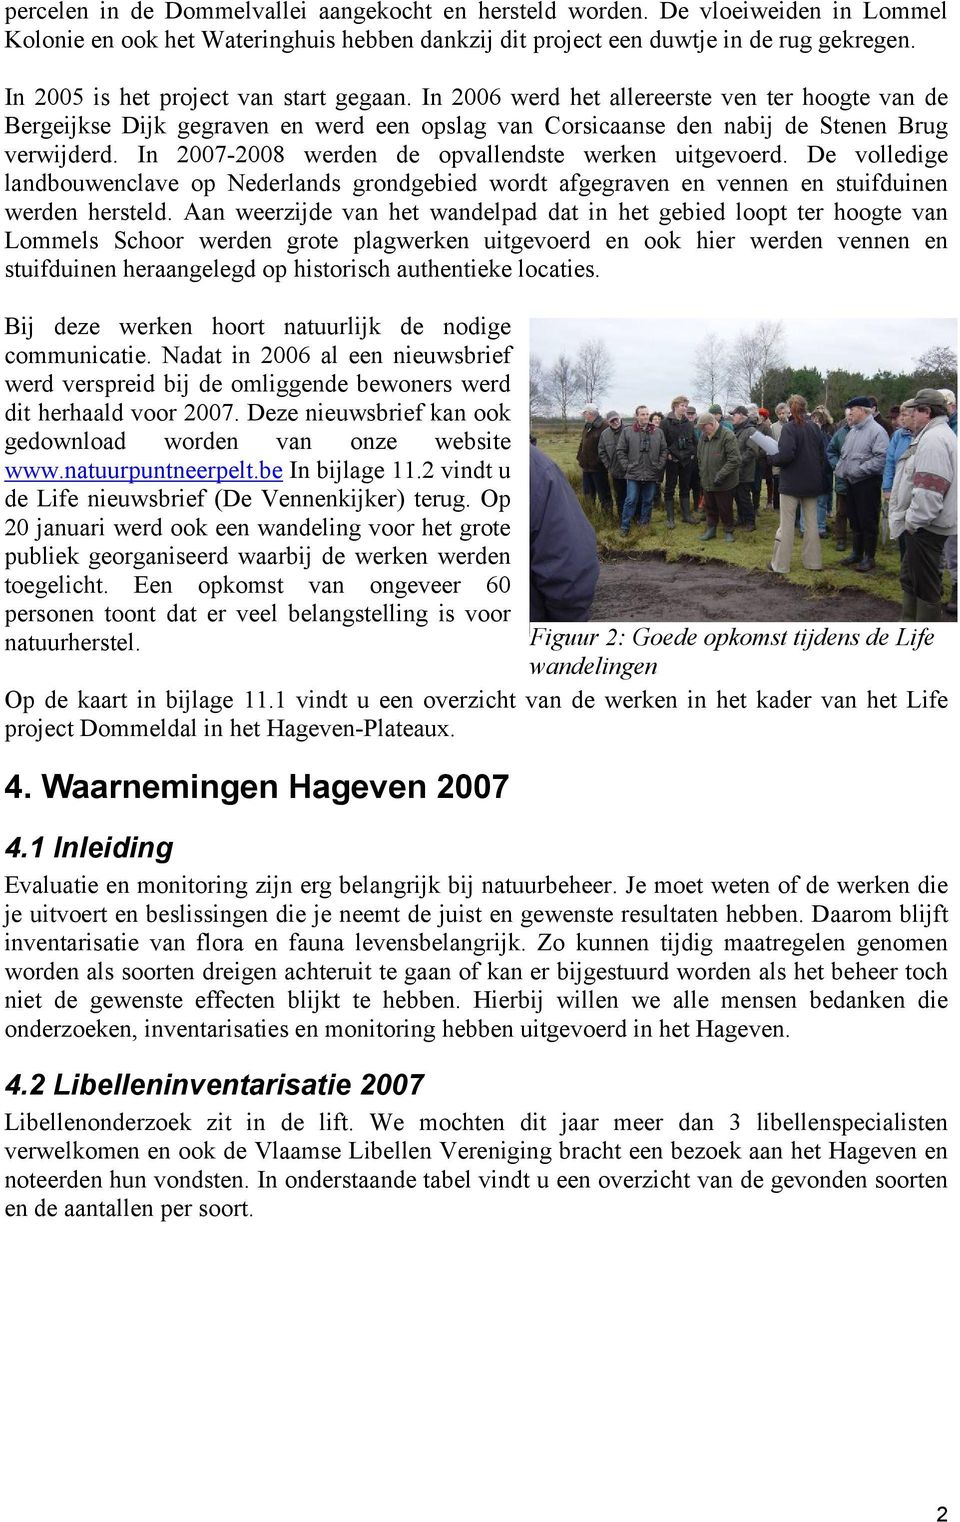 In 2007-2008 werden de opvallendste werken uitgevoerd. De volledige landbouwenclave op Nederlands grondgebied wordt afgegraven en vennen en stuifduinen werden hersteld.